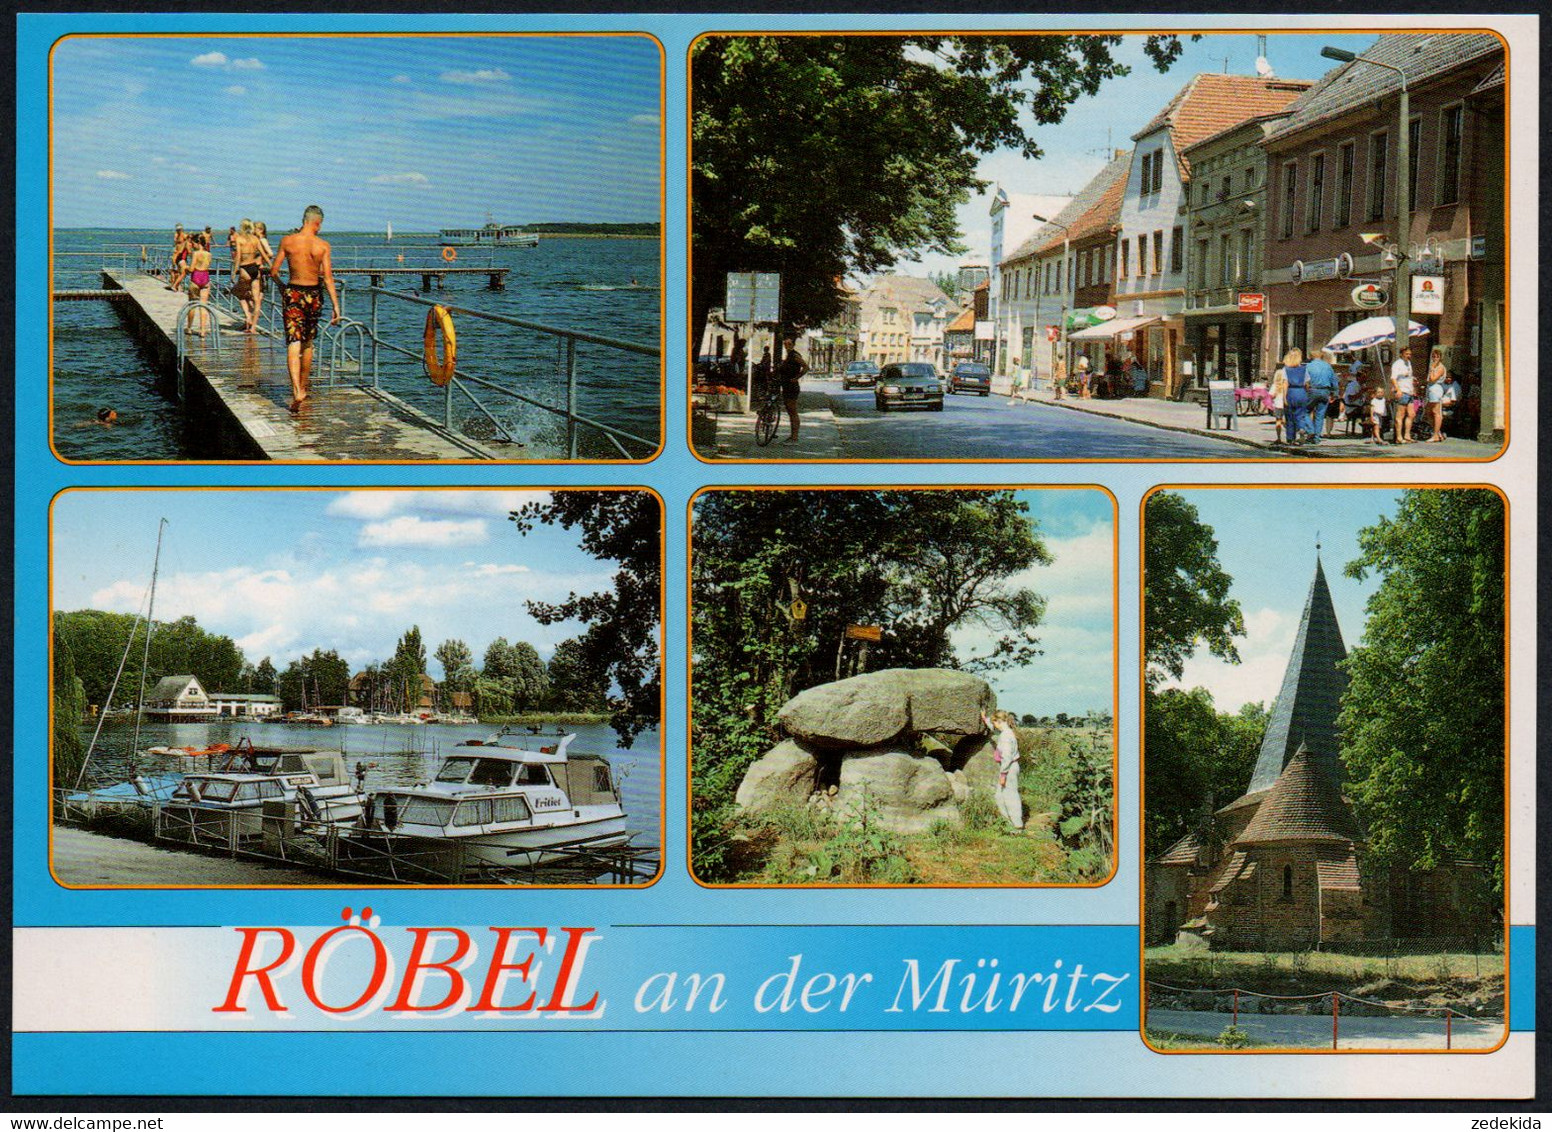 E7914 - TOP Röbel - Bild Und Heimat Reichenbach Qualitätskarte - Röbel